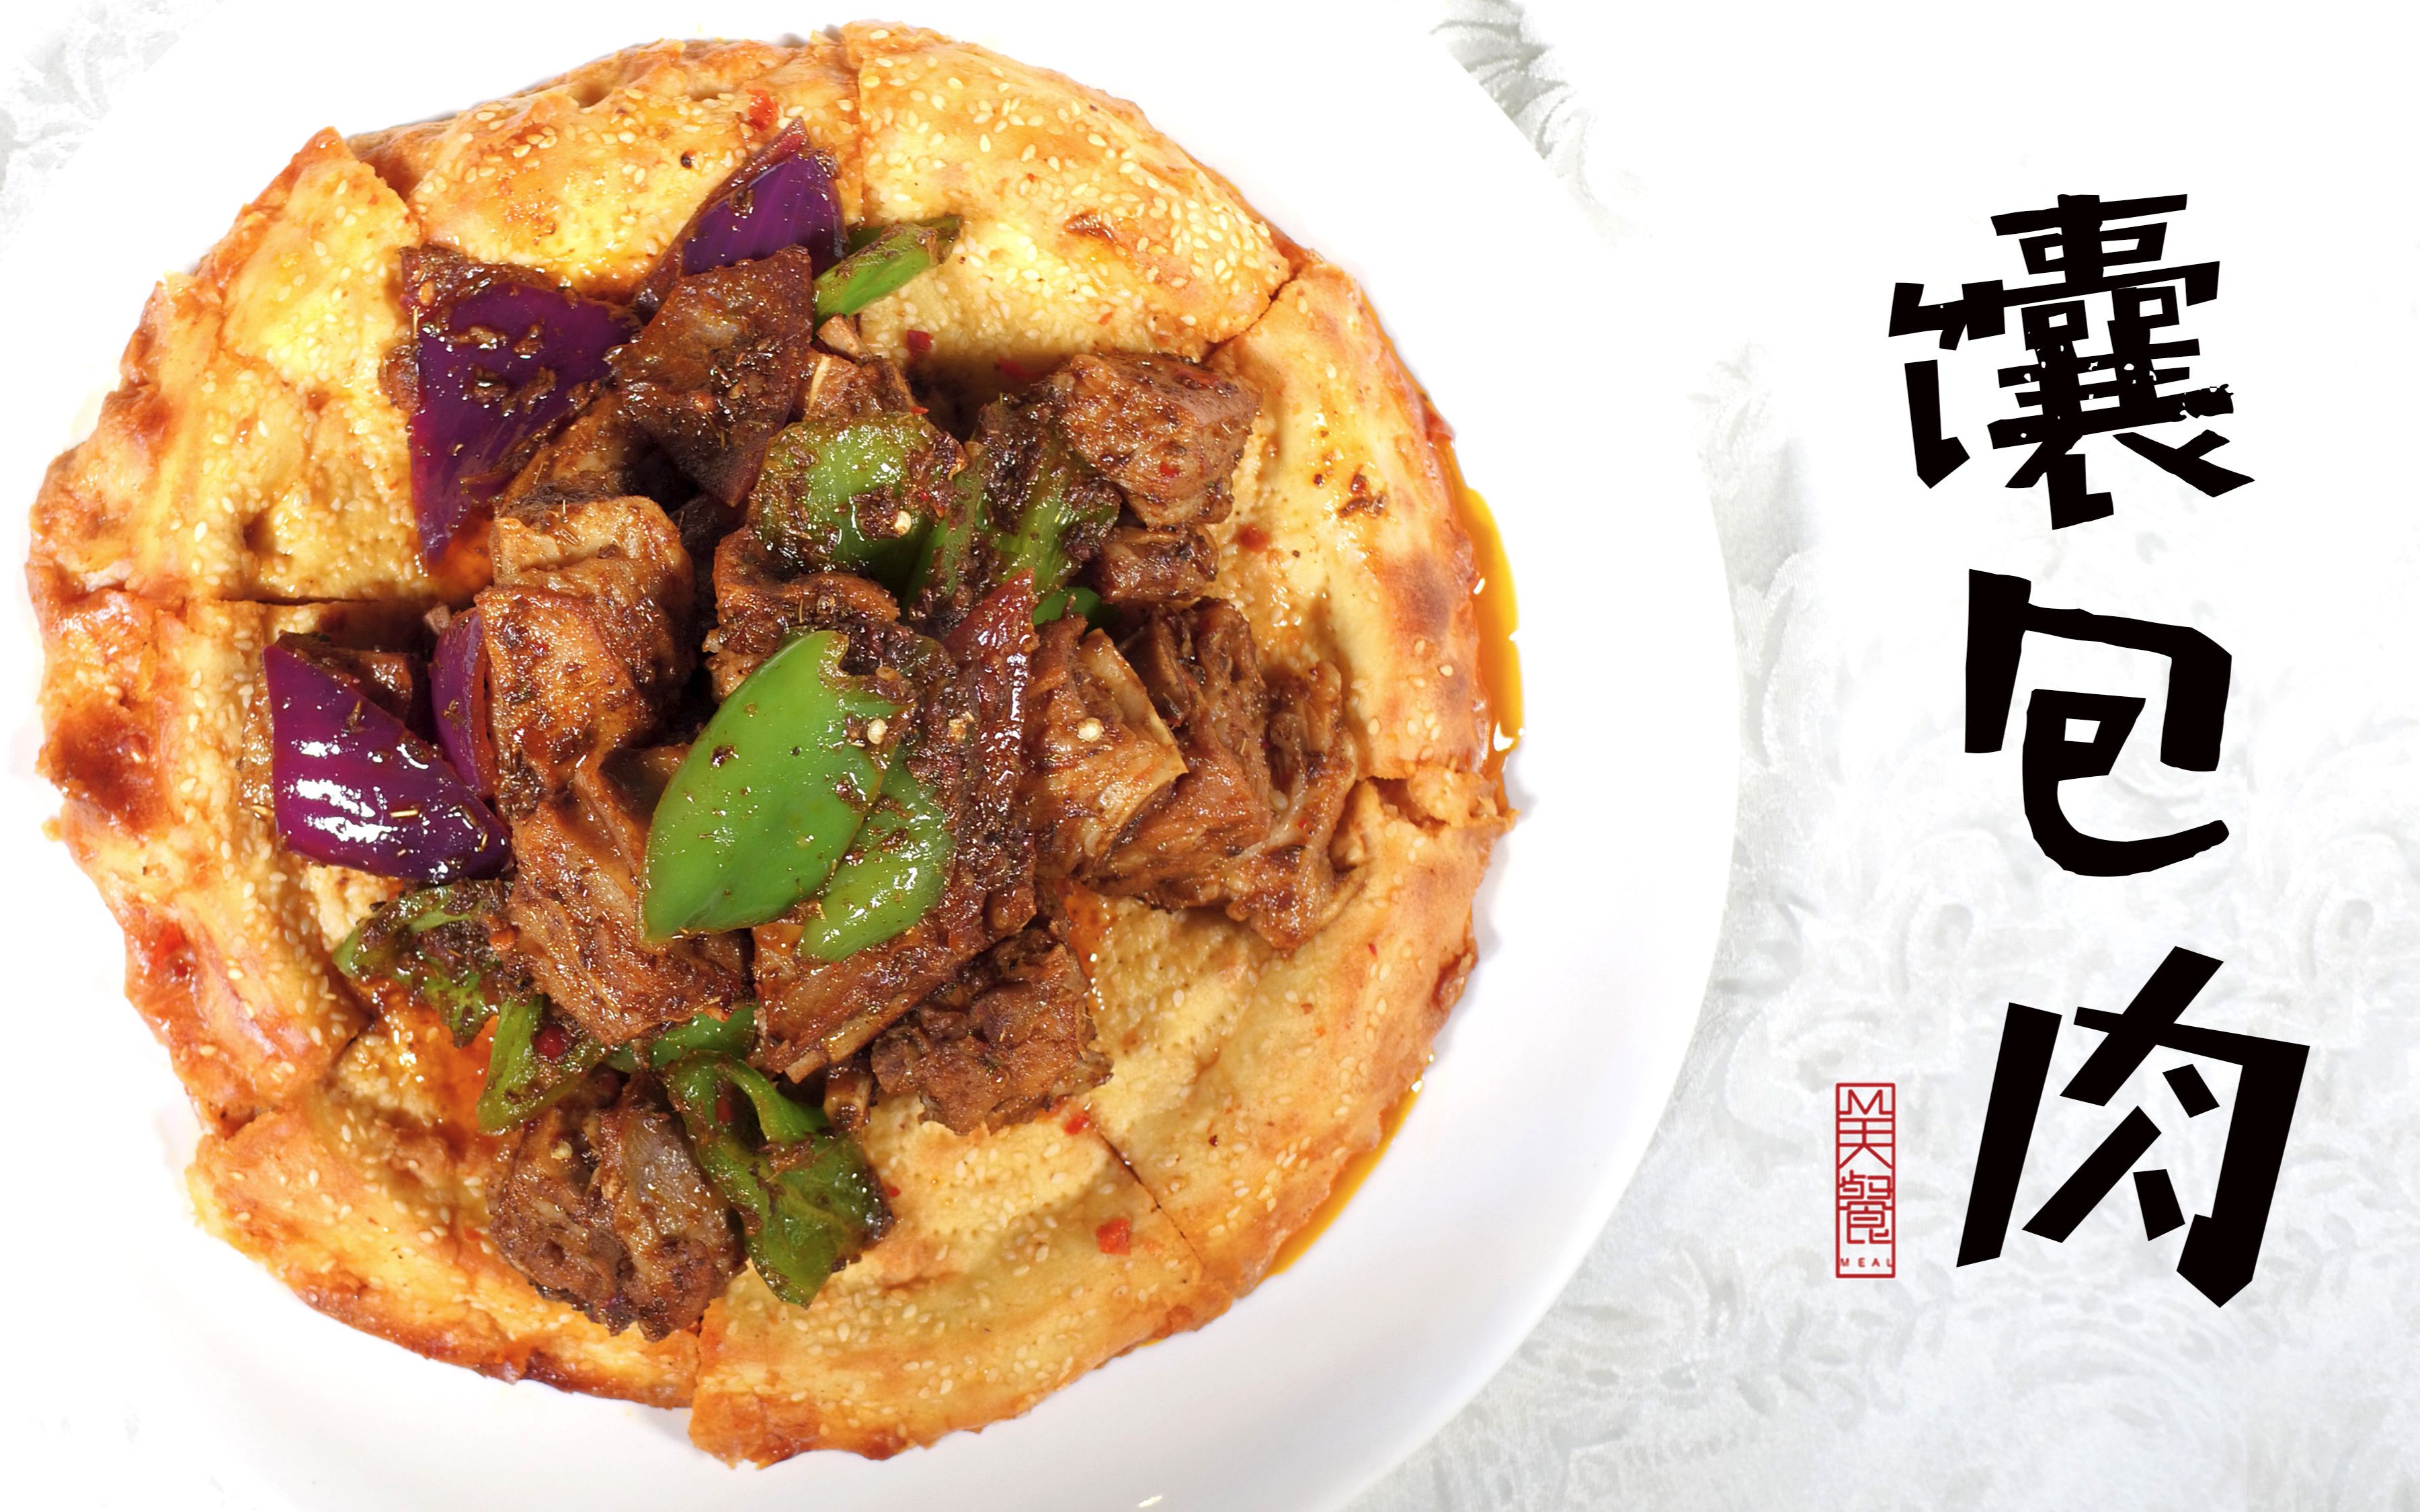 新疆特色美食馕包肉制作秘方大公开带你踏上舌尖上的丝绸之路